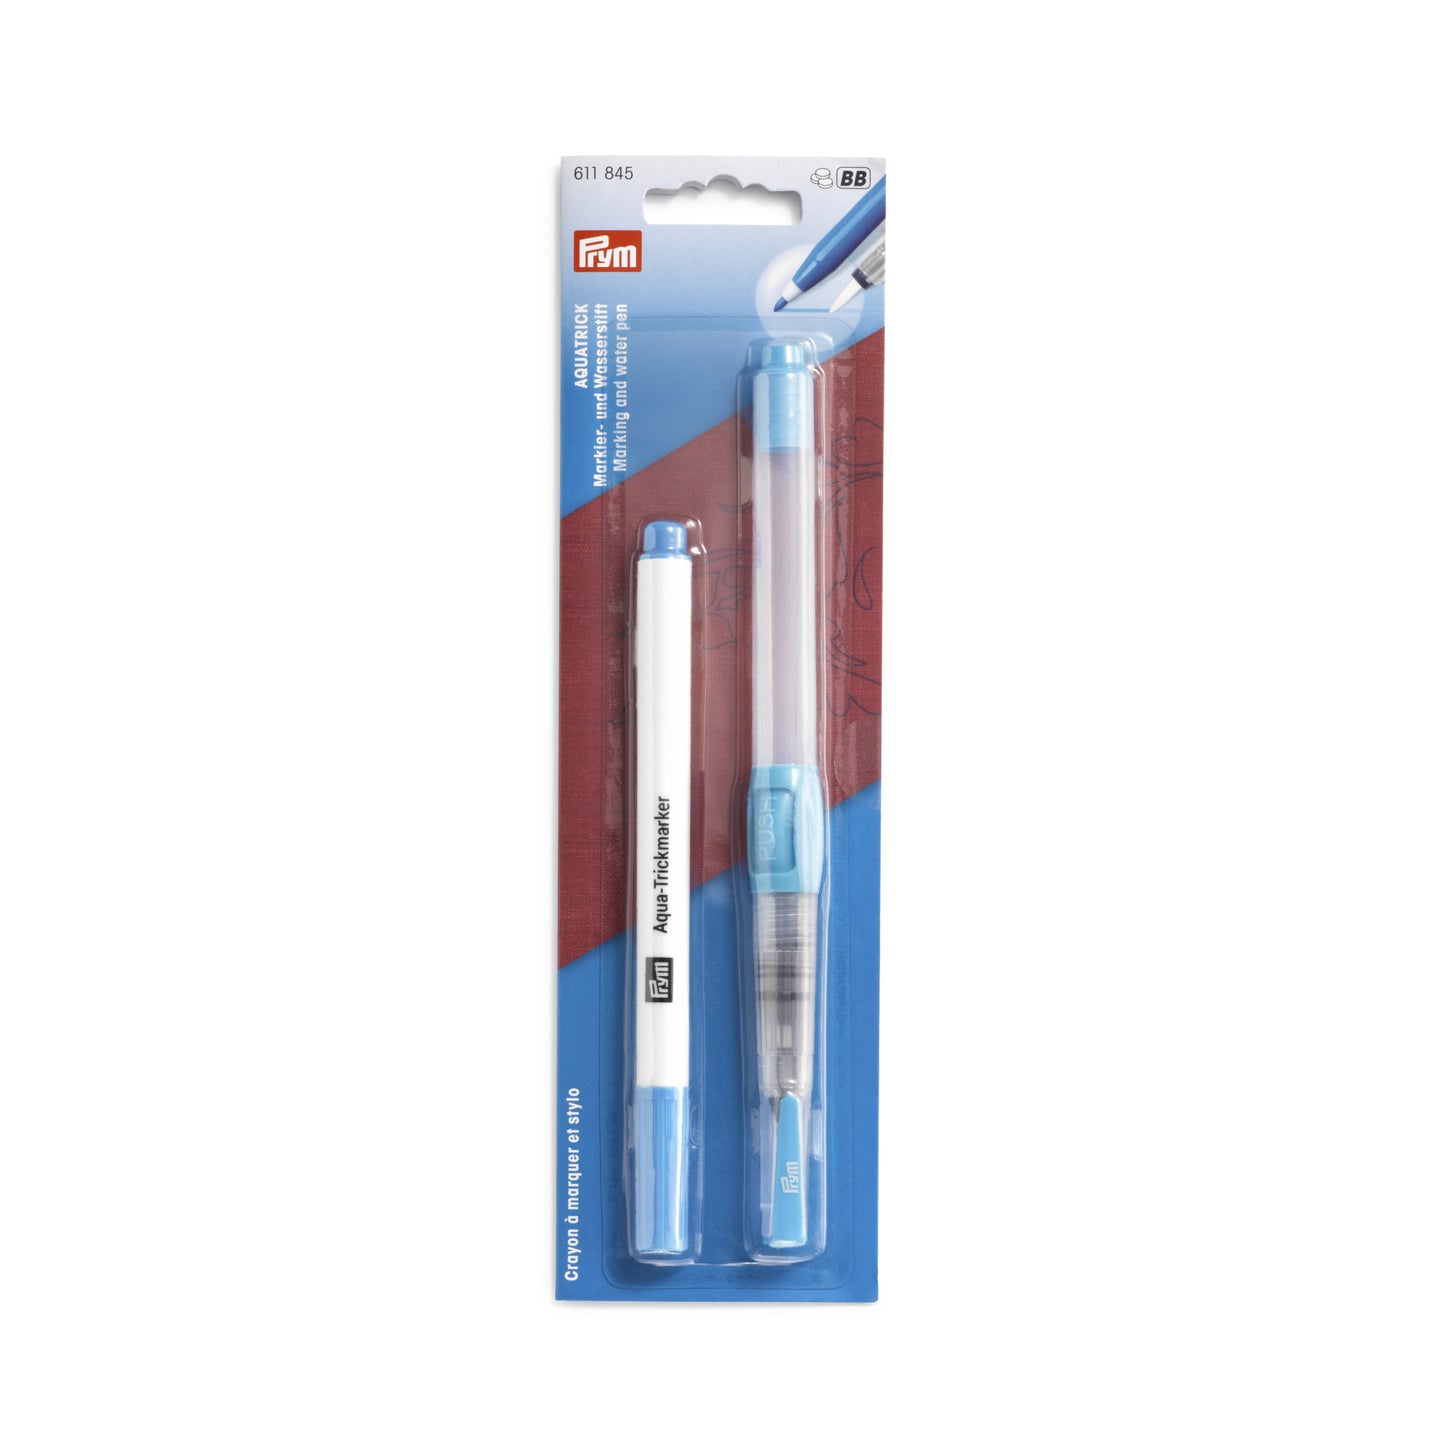 Prym Aquatrick Marker & Water Pen Set